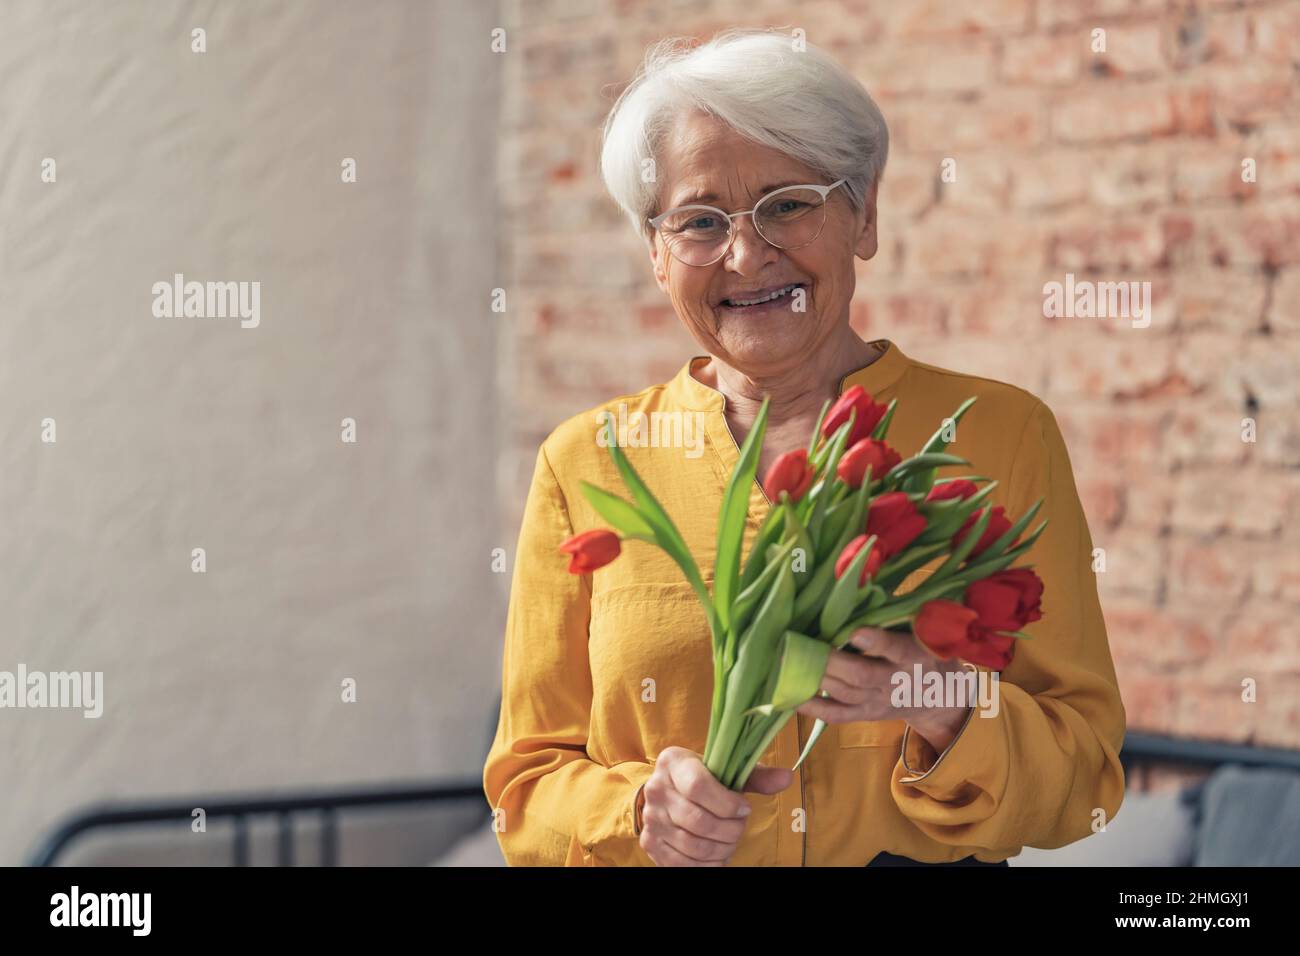 Donna anziana dai capelli grigi ottiene i fiori rossi bei per il giorno del nonno nazionale. Foto di alta qualità Foto Stock